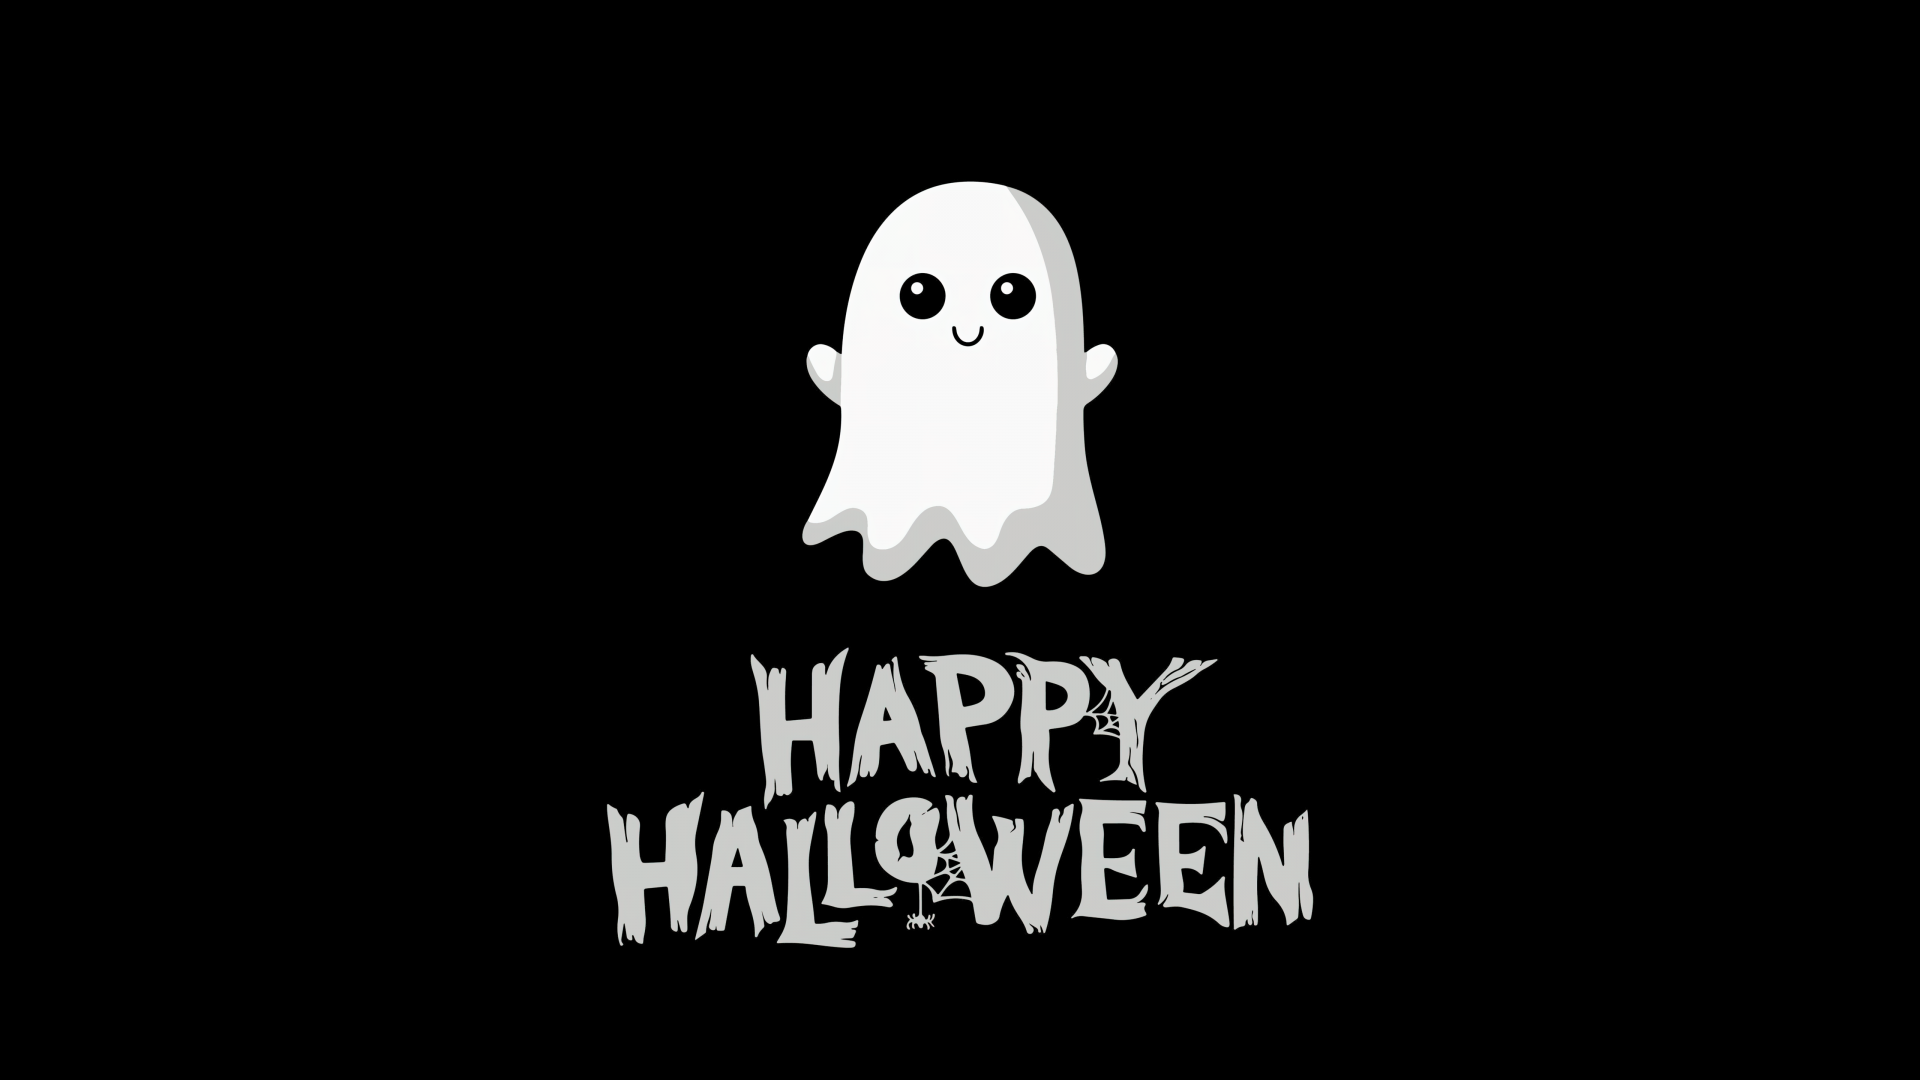 Happy Halloween Ghost Wallpaper-1920x1080